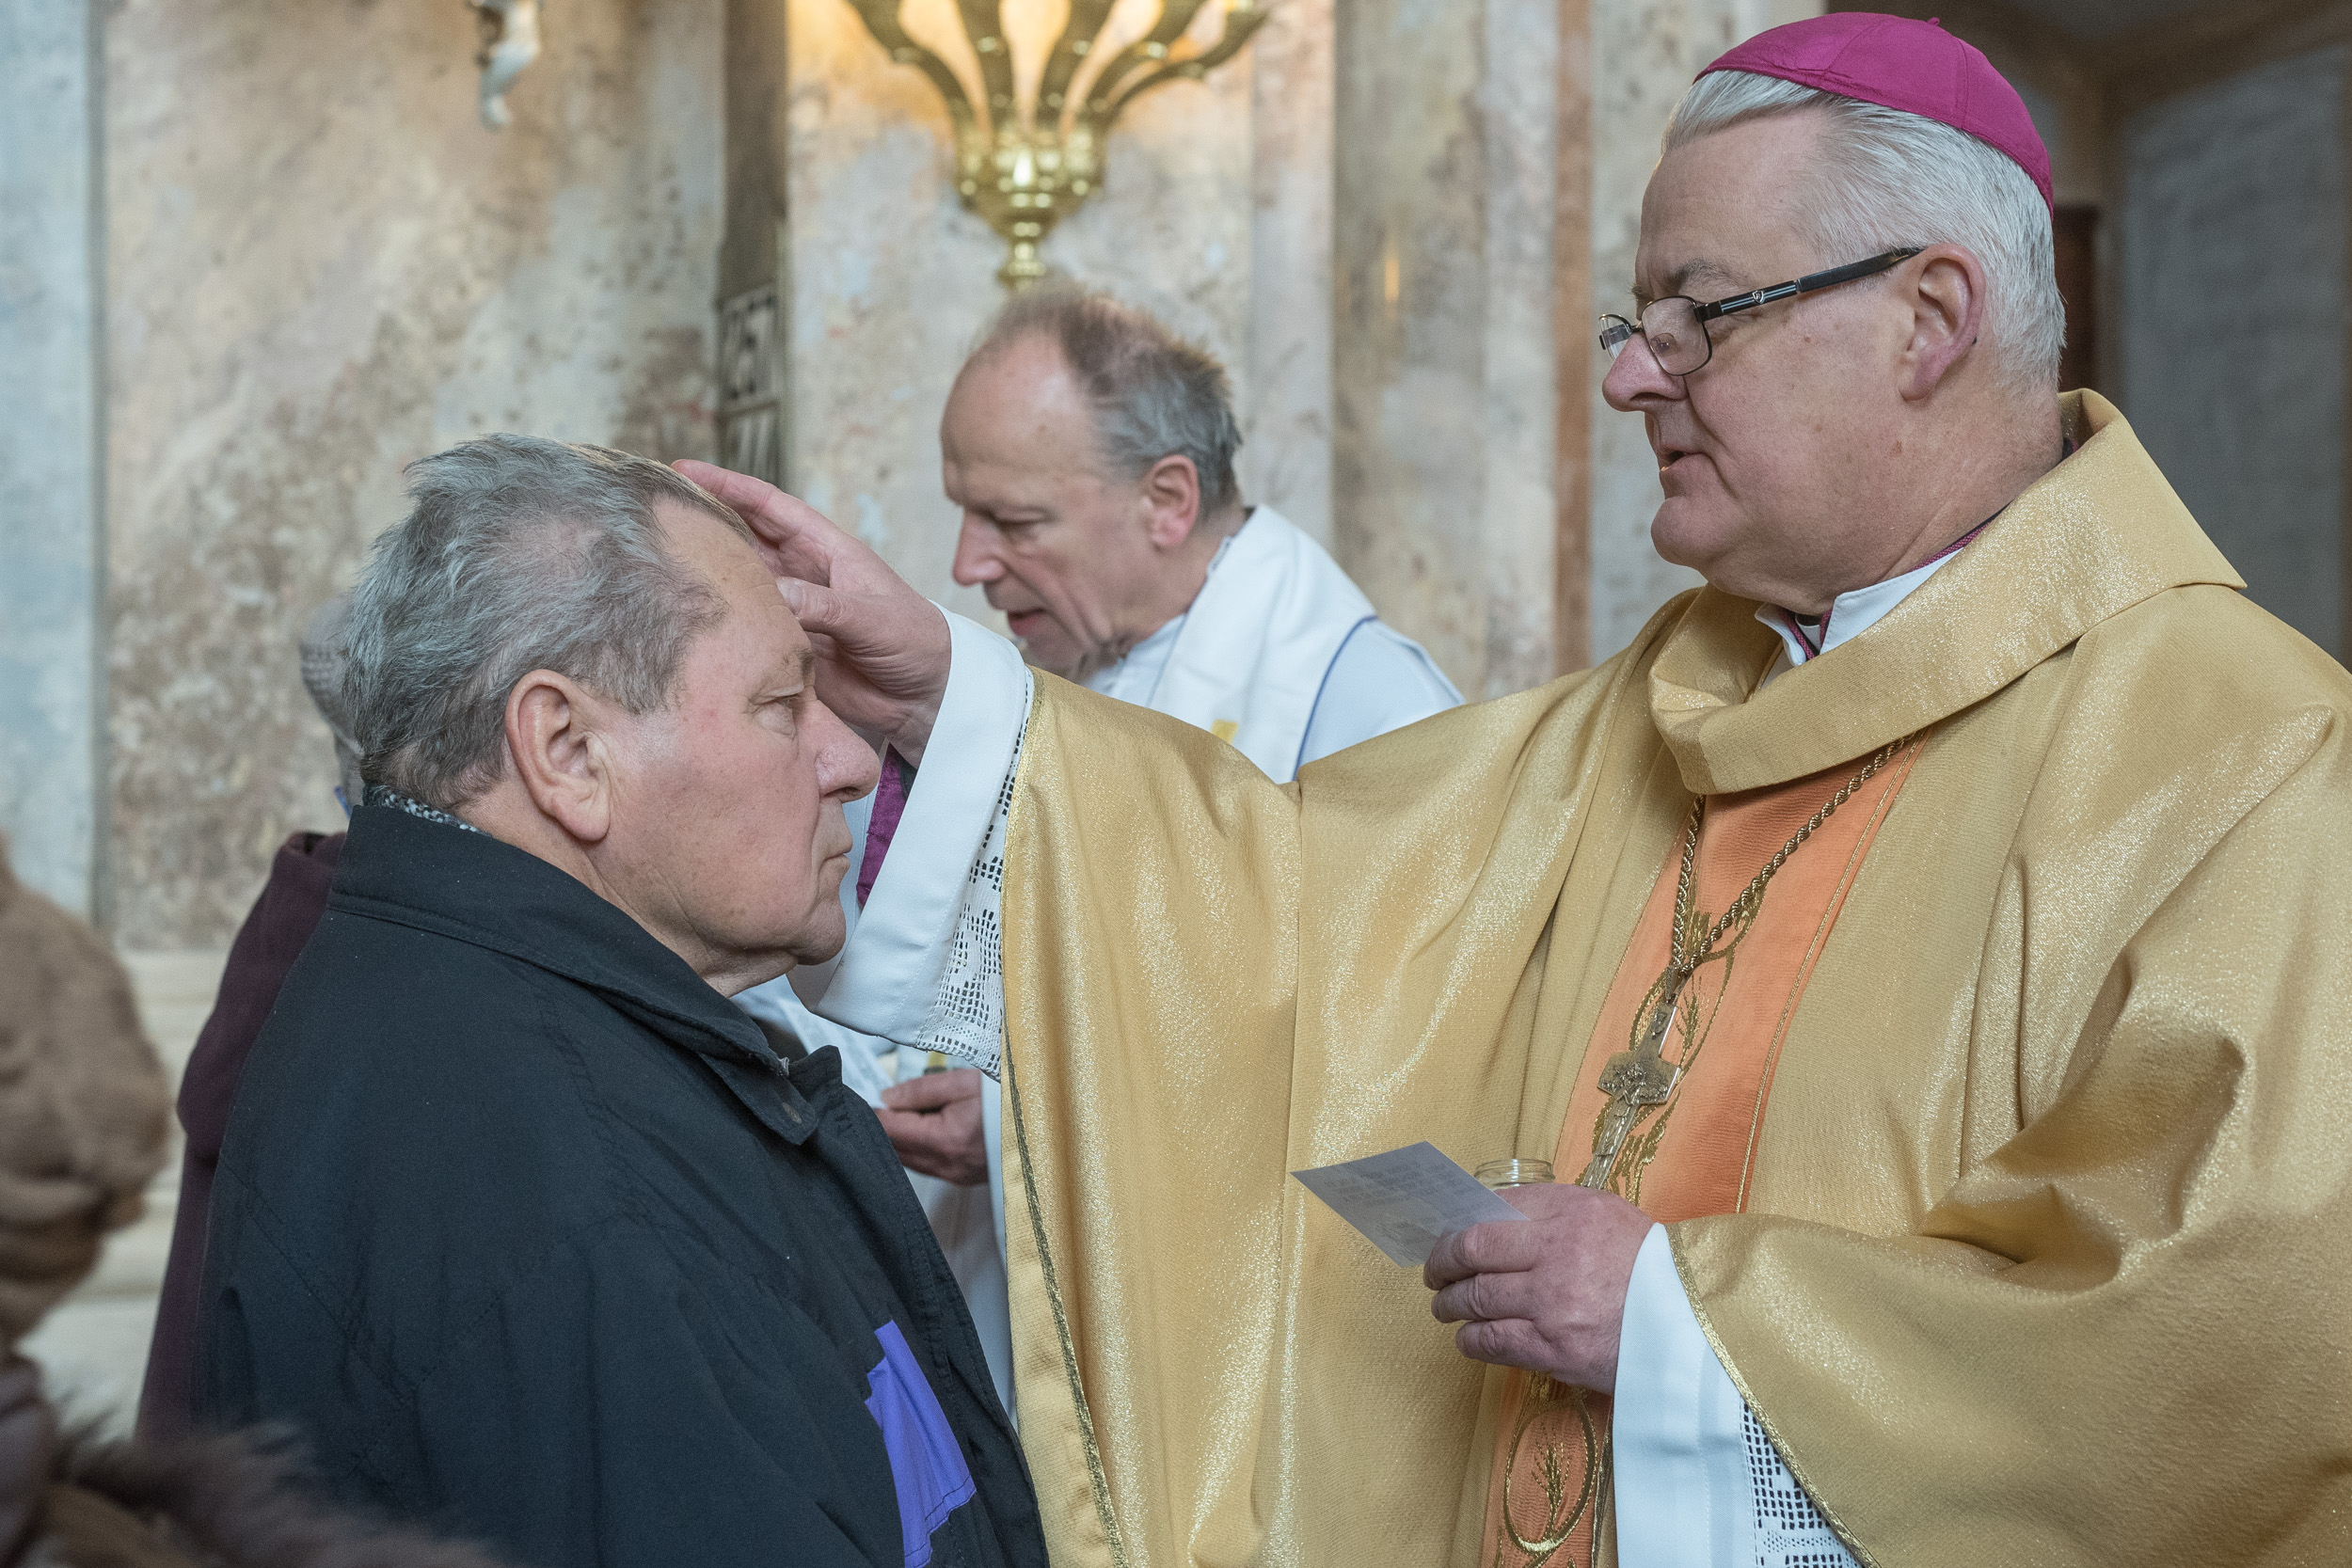 Püspöki mise lesz hétfőn a Szent Imre templomban, a Betegek Világnapján